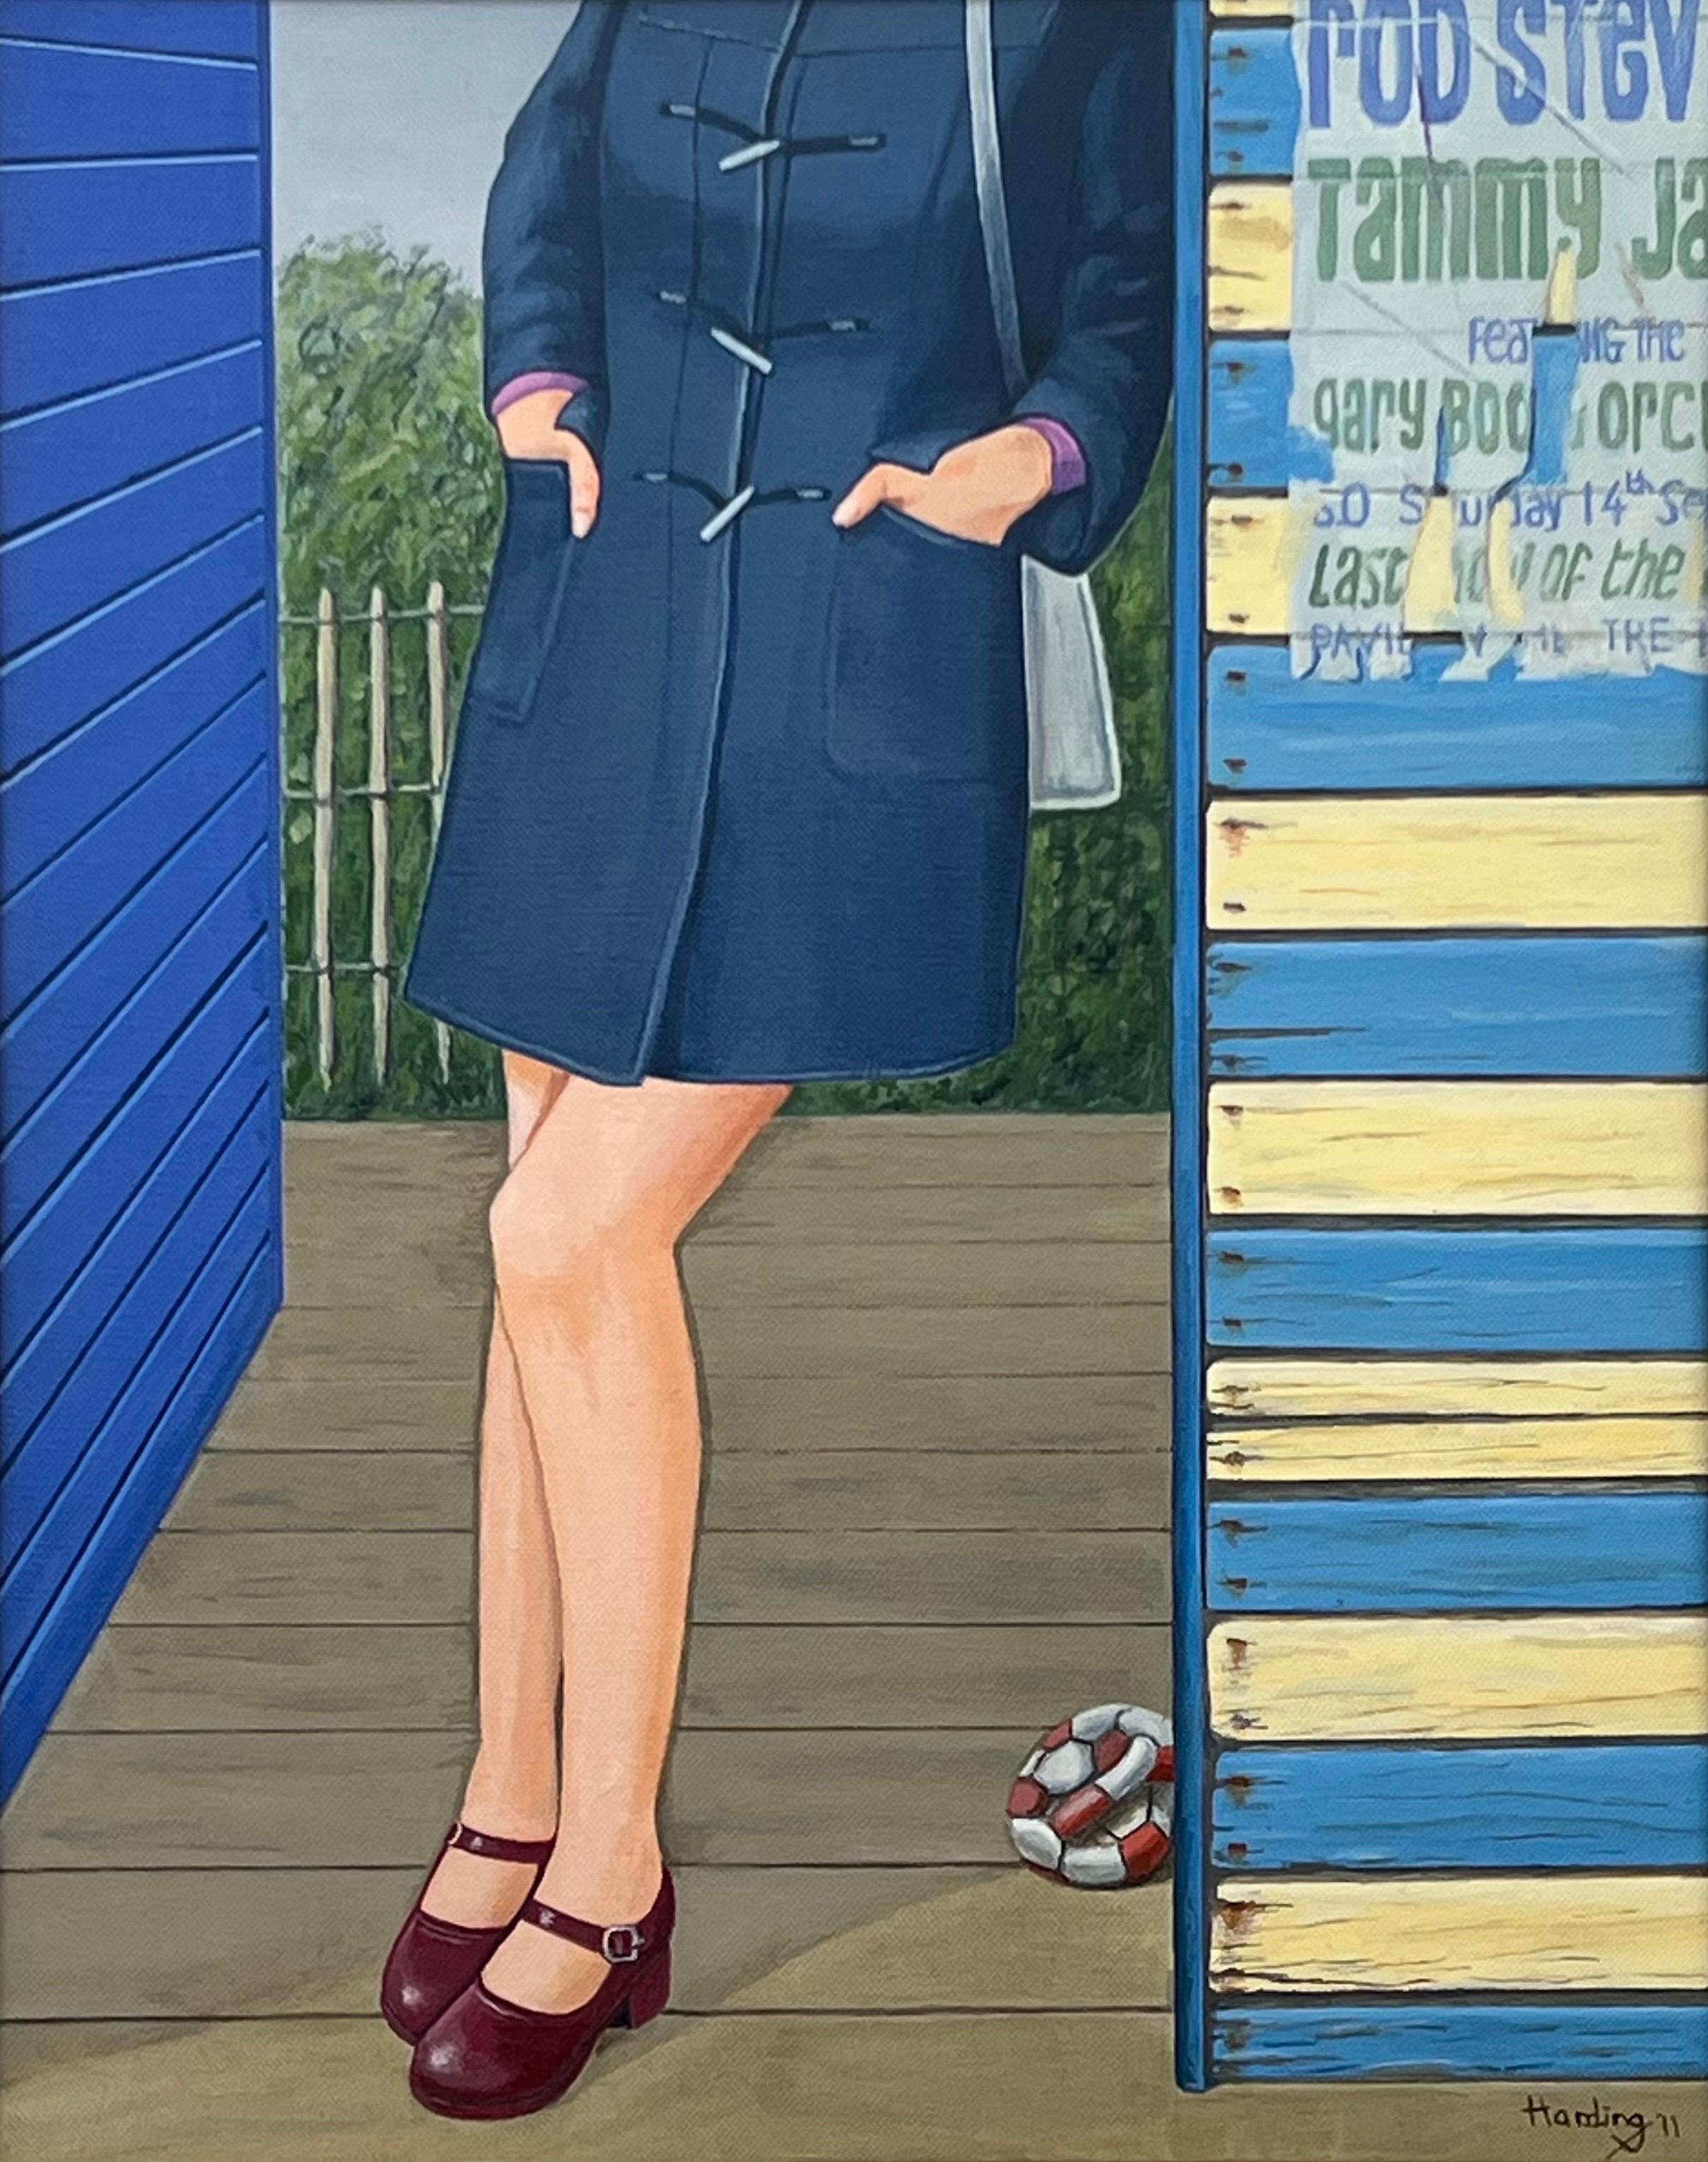 Vintage English Woman with Duffel Coat & Mary Jane Shoes 1960's 1970's England entitled 'The Fall of Desire' by Retro Nostalgic Artist, Paul F Harding. Signé, original, huile sur toile. Présenté dans un cadre en or.

L'œuvre d'art mesure 16 x 20